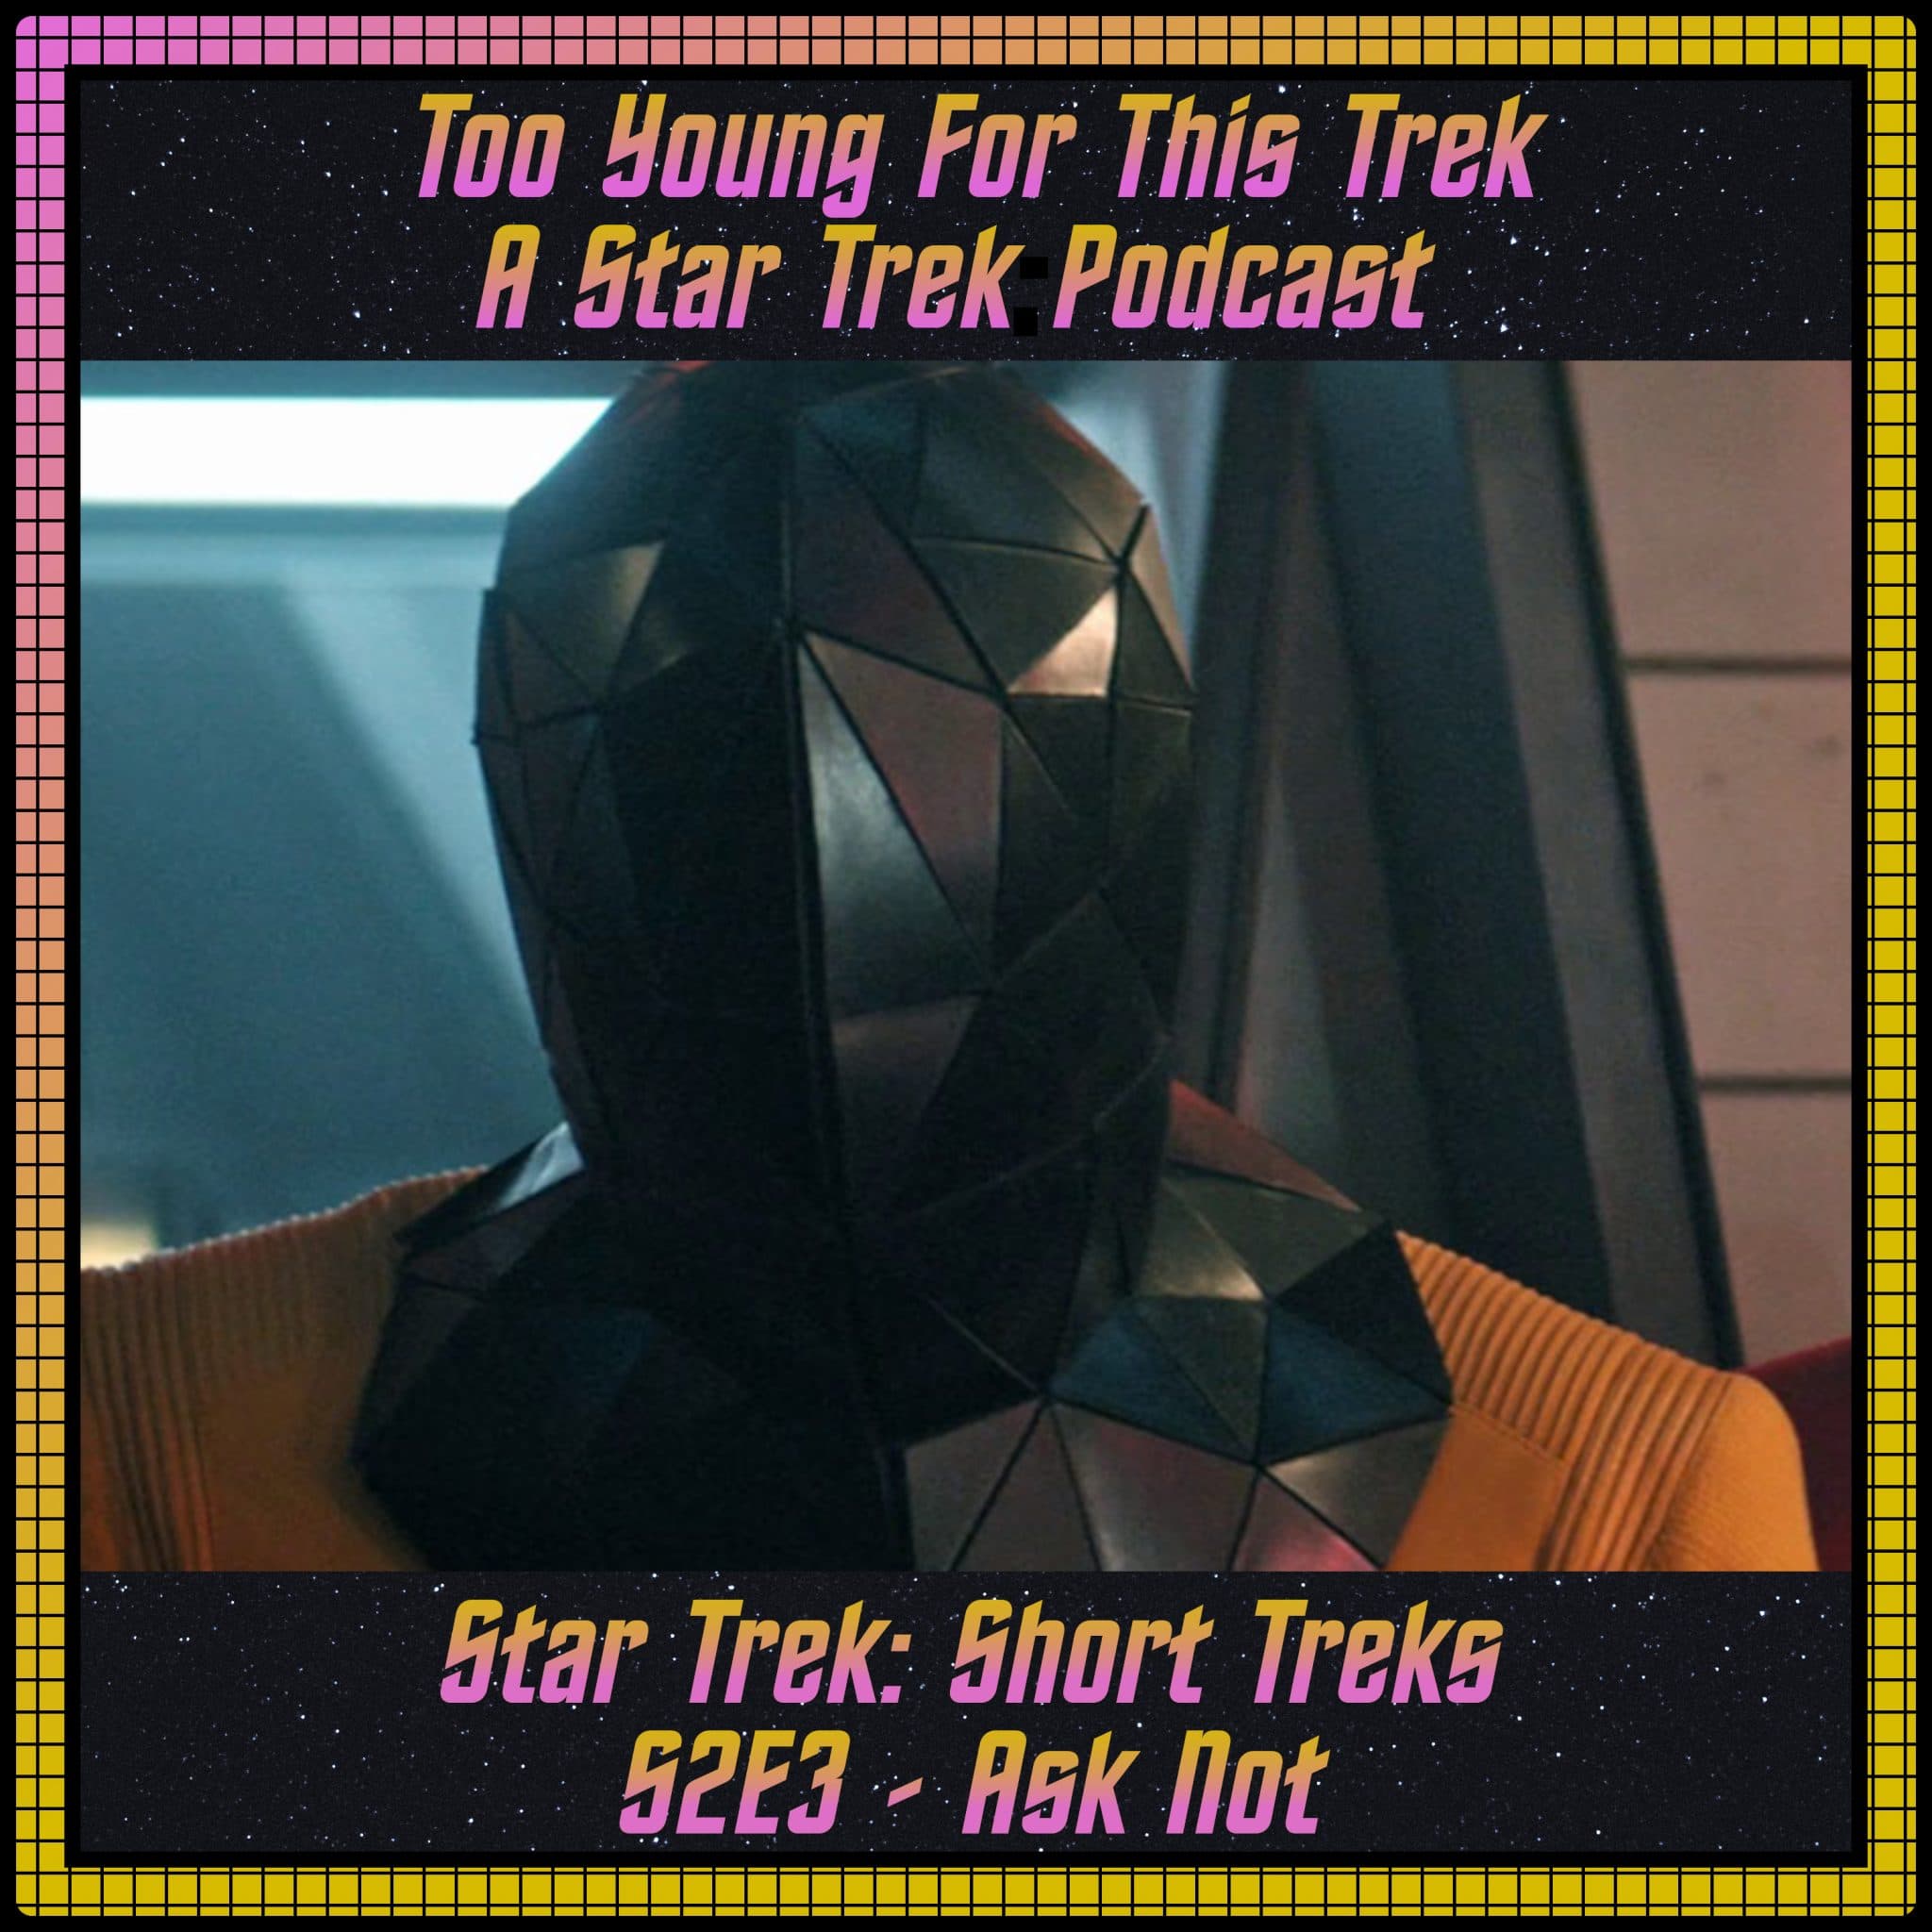 Star Trek: Short Treks S2E3 - Ask Not